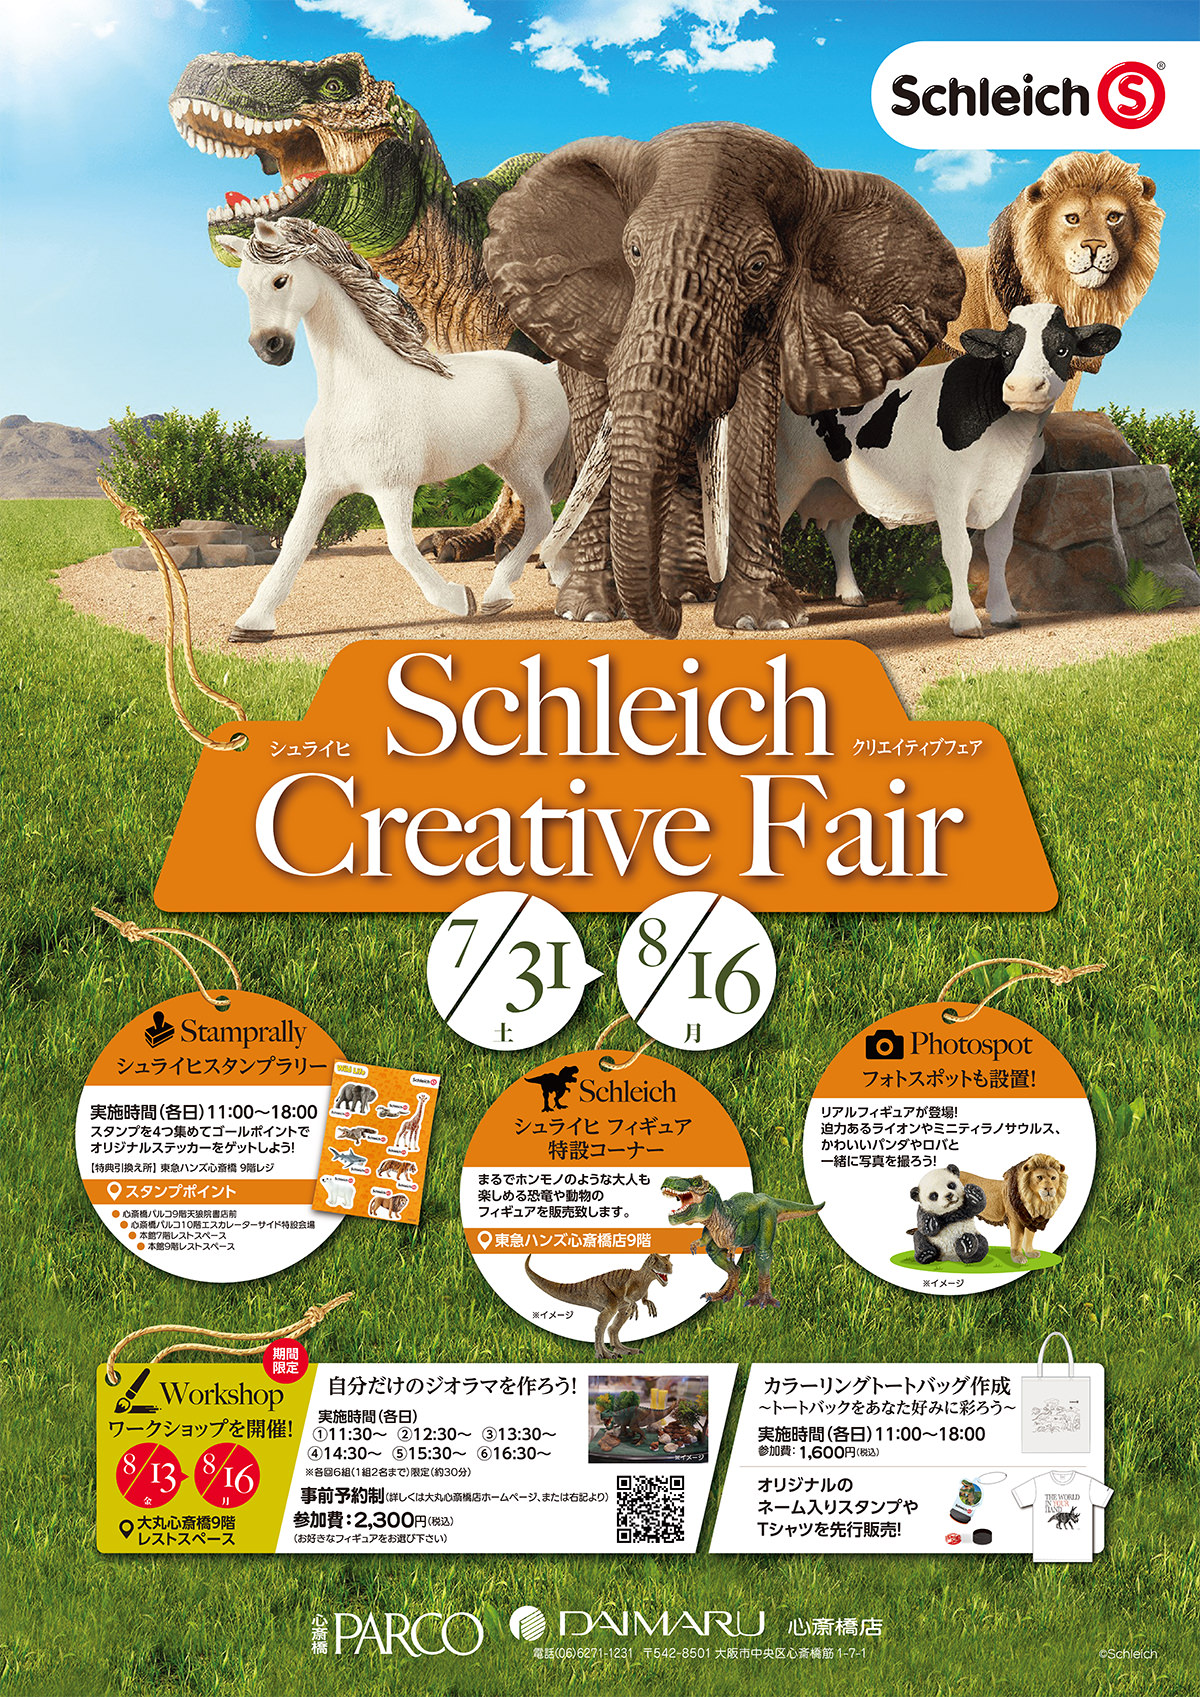 シュライヒ「Shleich Creative Fair」告知ポスター